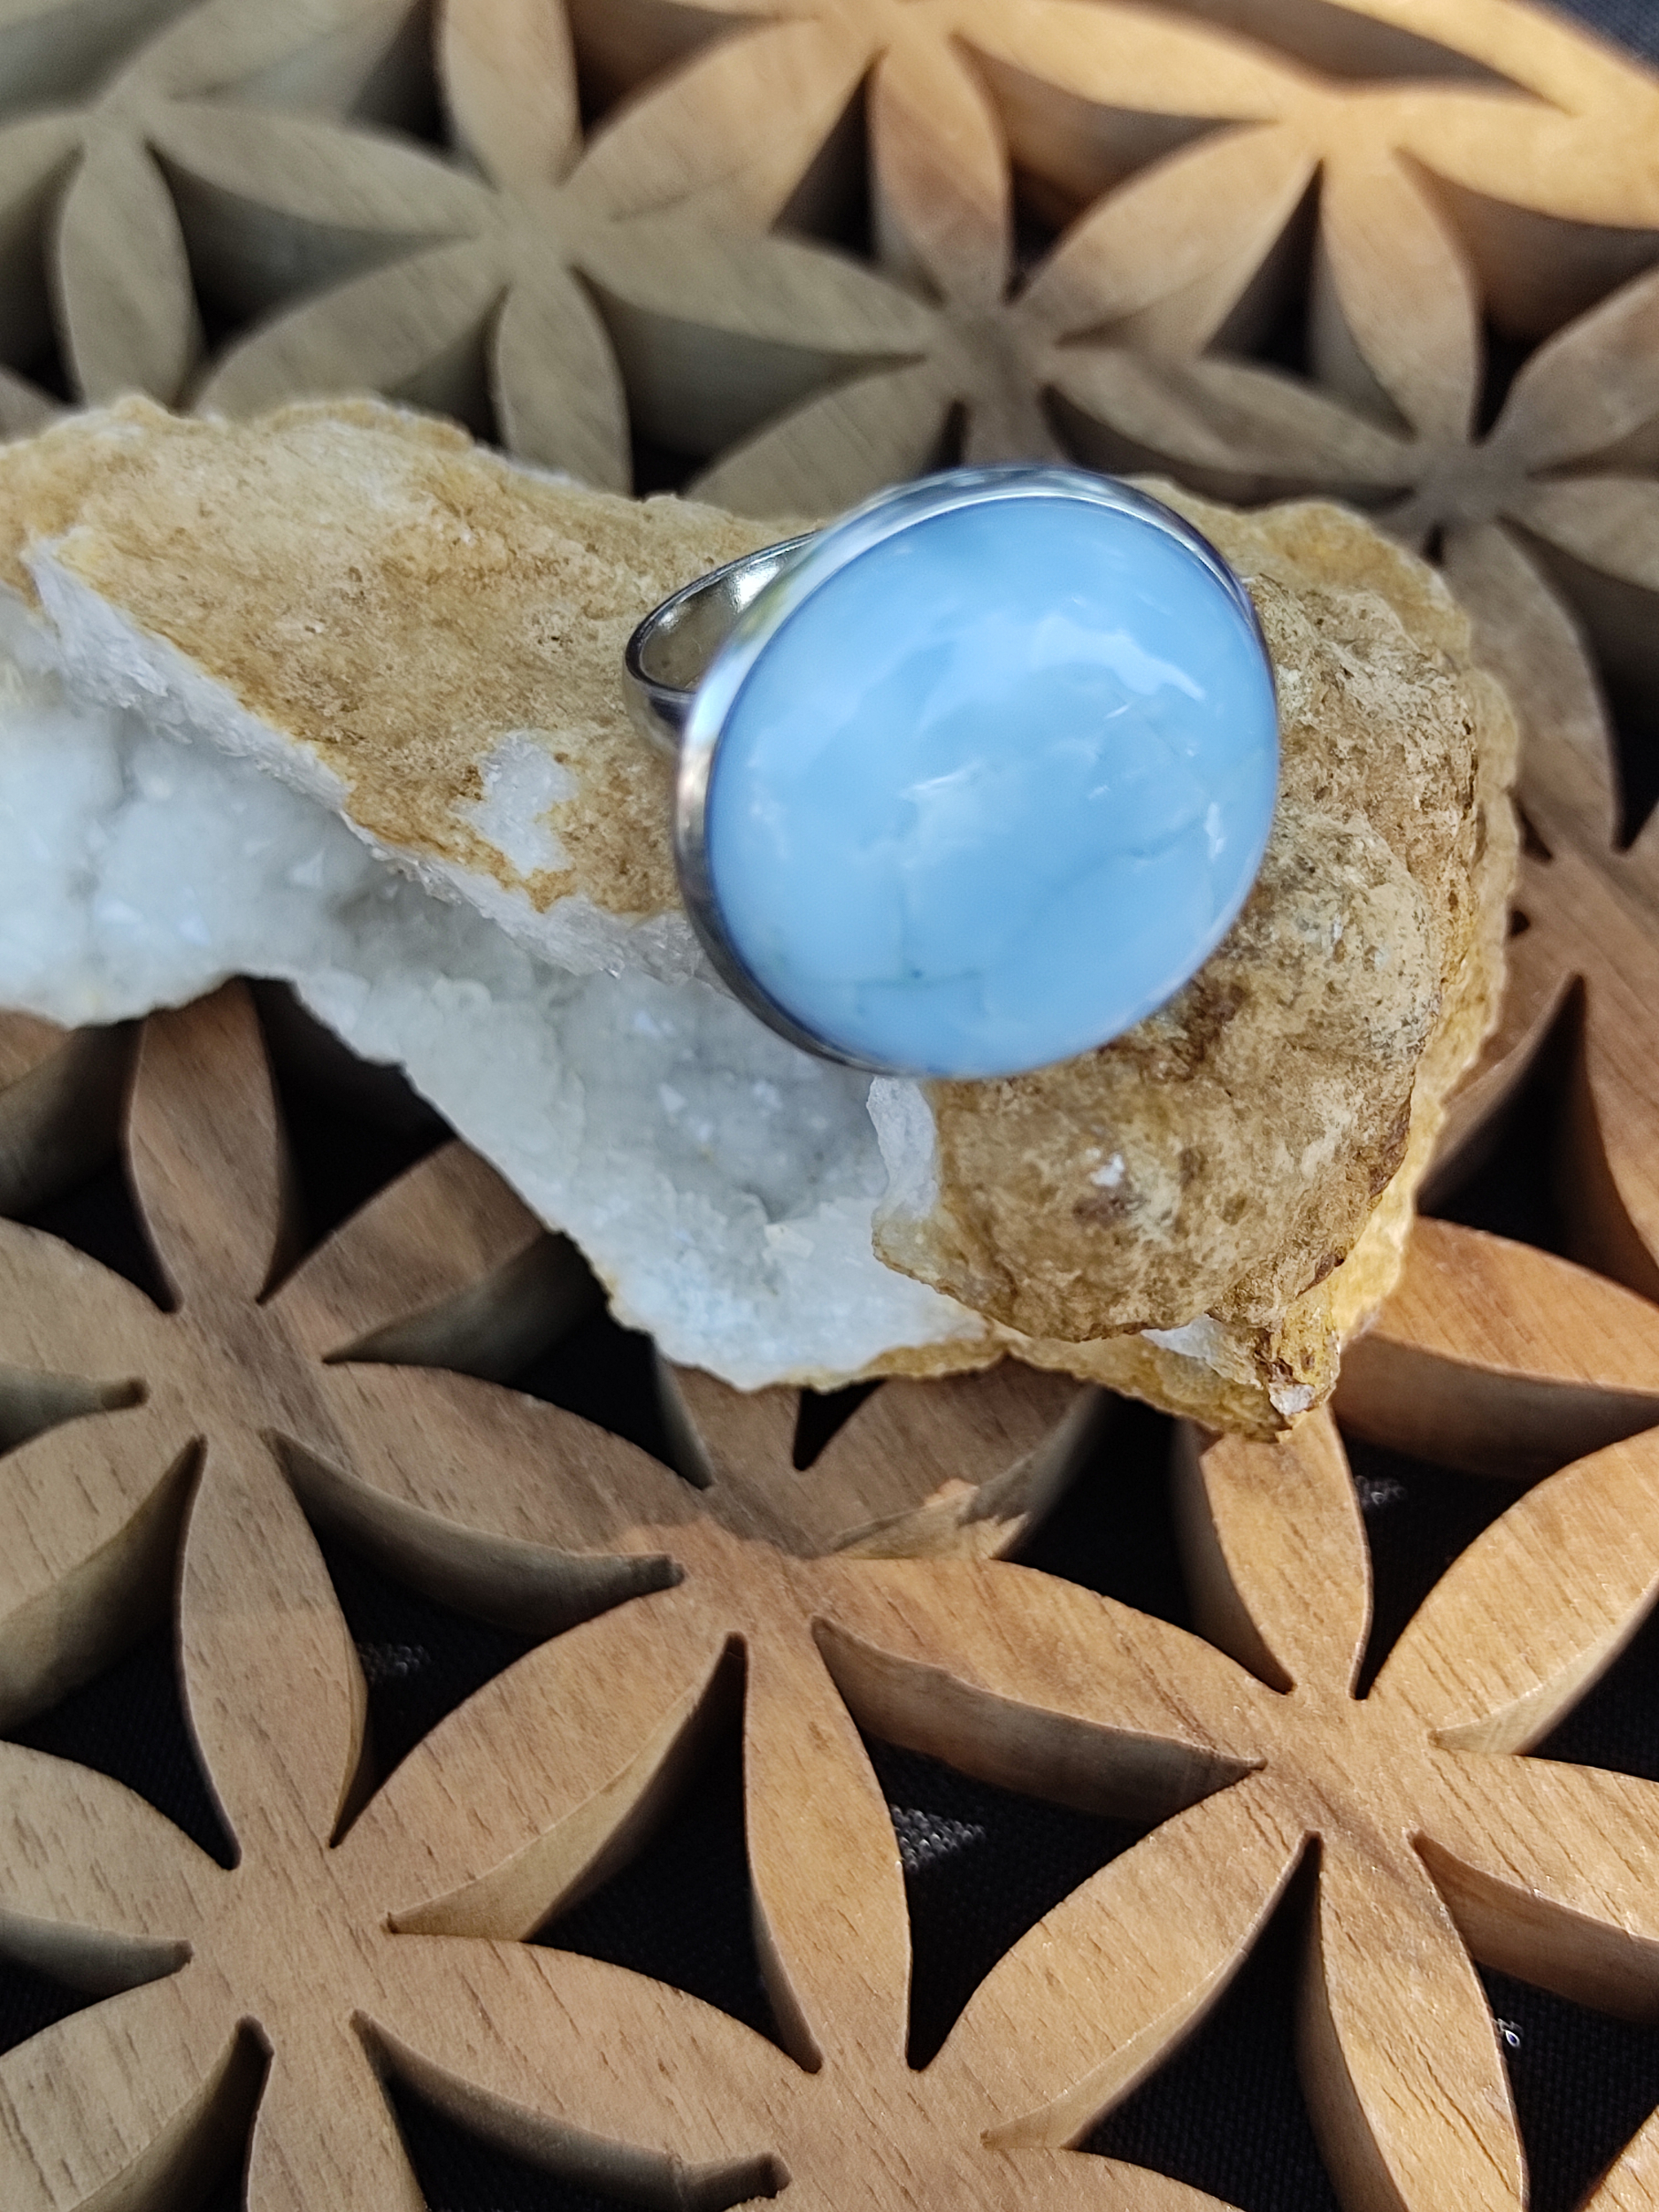 Bague 20mm opale bleue